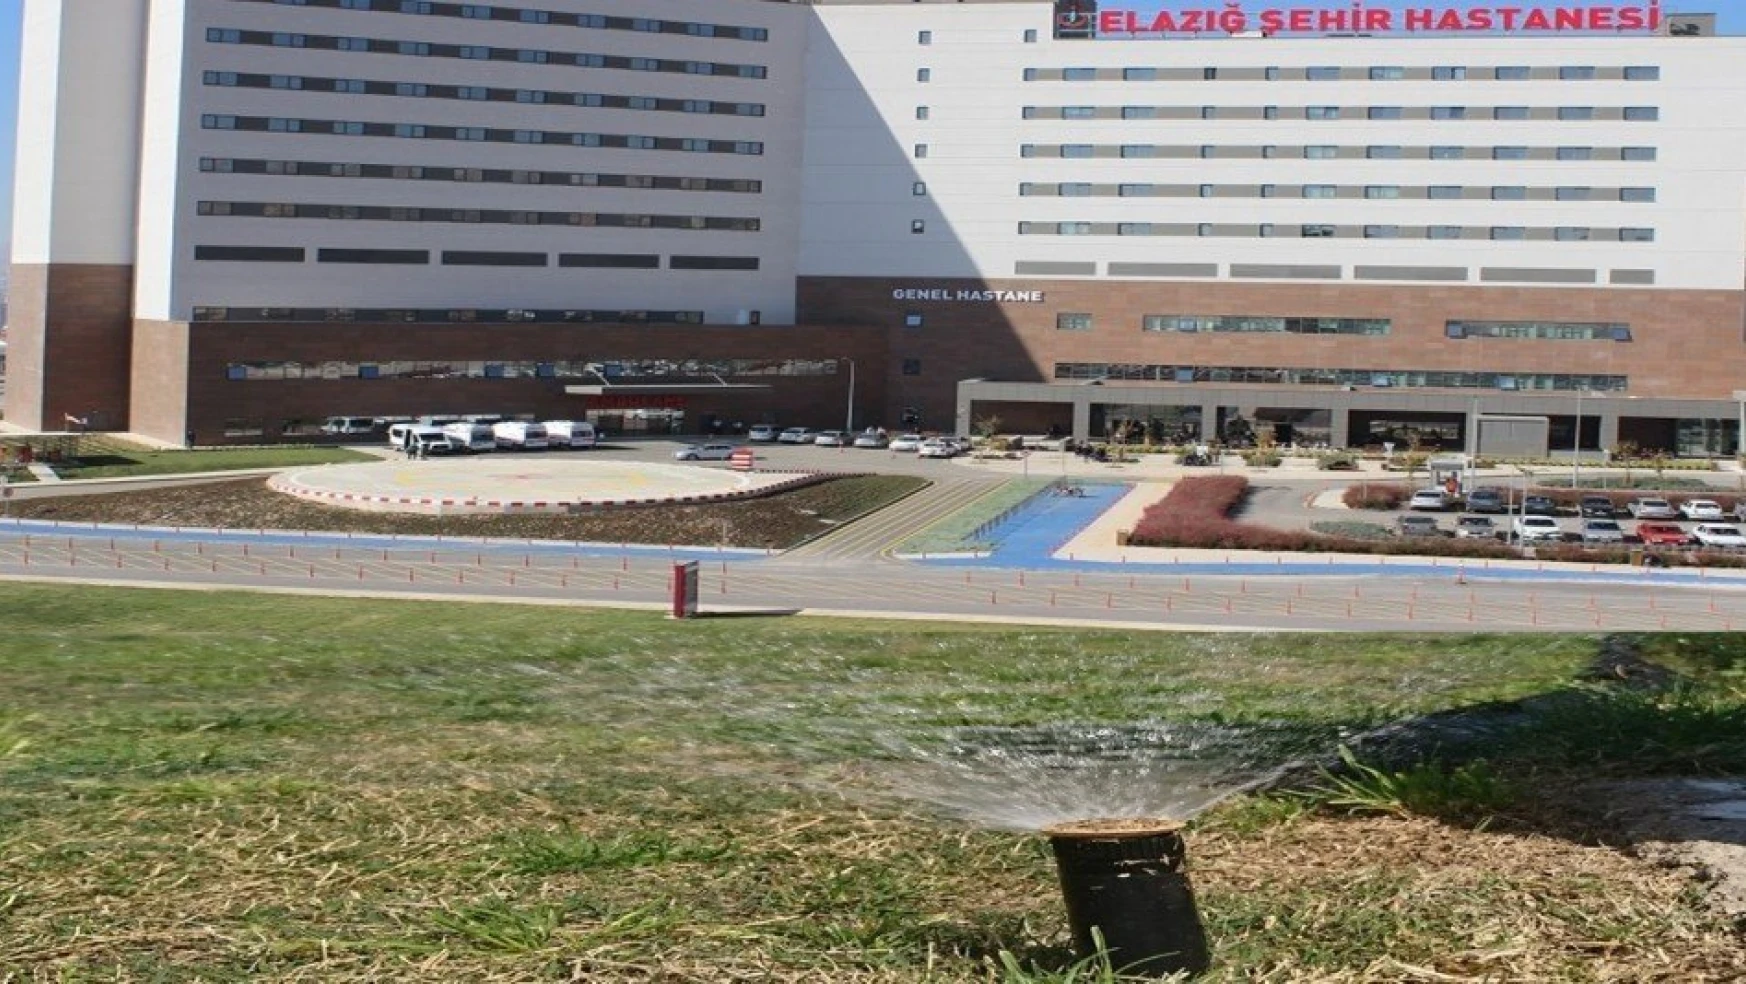 Elazığ Şehir Hastanesinde Su Tasarrufunda Örnek Uygulama